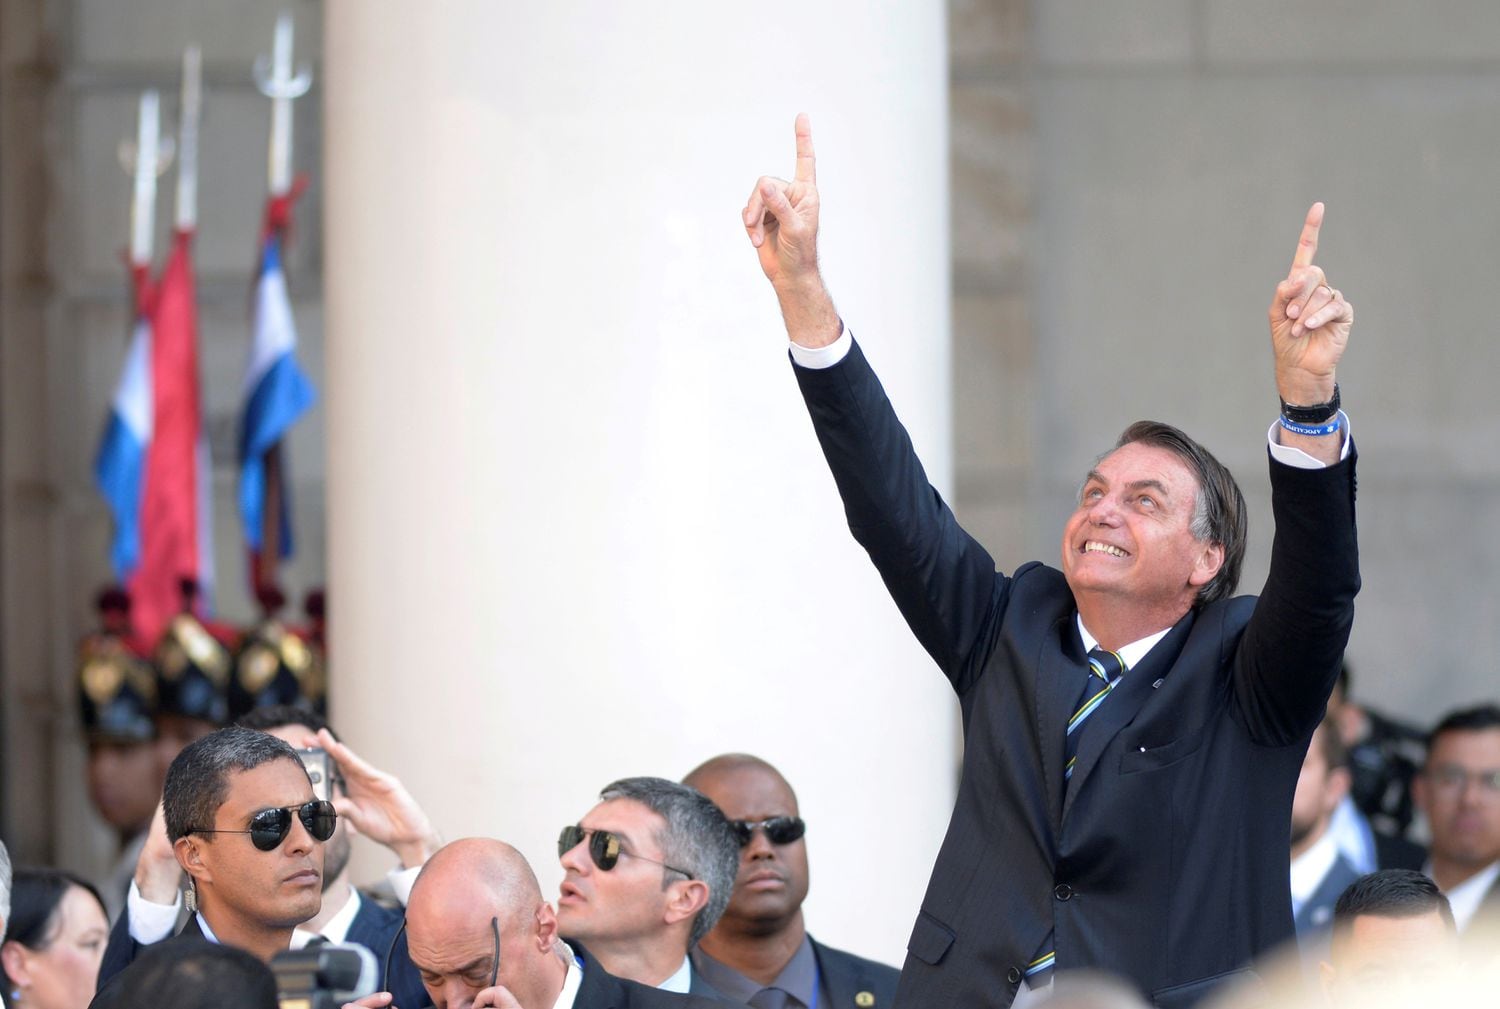 O presidente do Brasil, Jair Bolsonaro, chega à cerimônia de posse de Lacalle Pou.